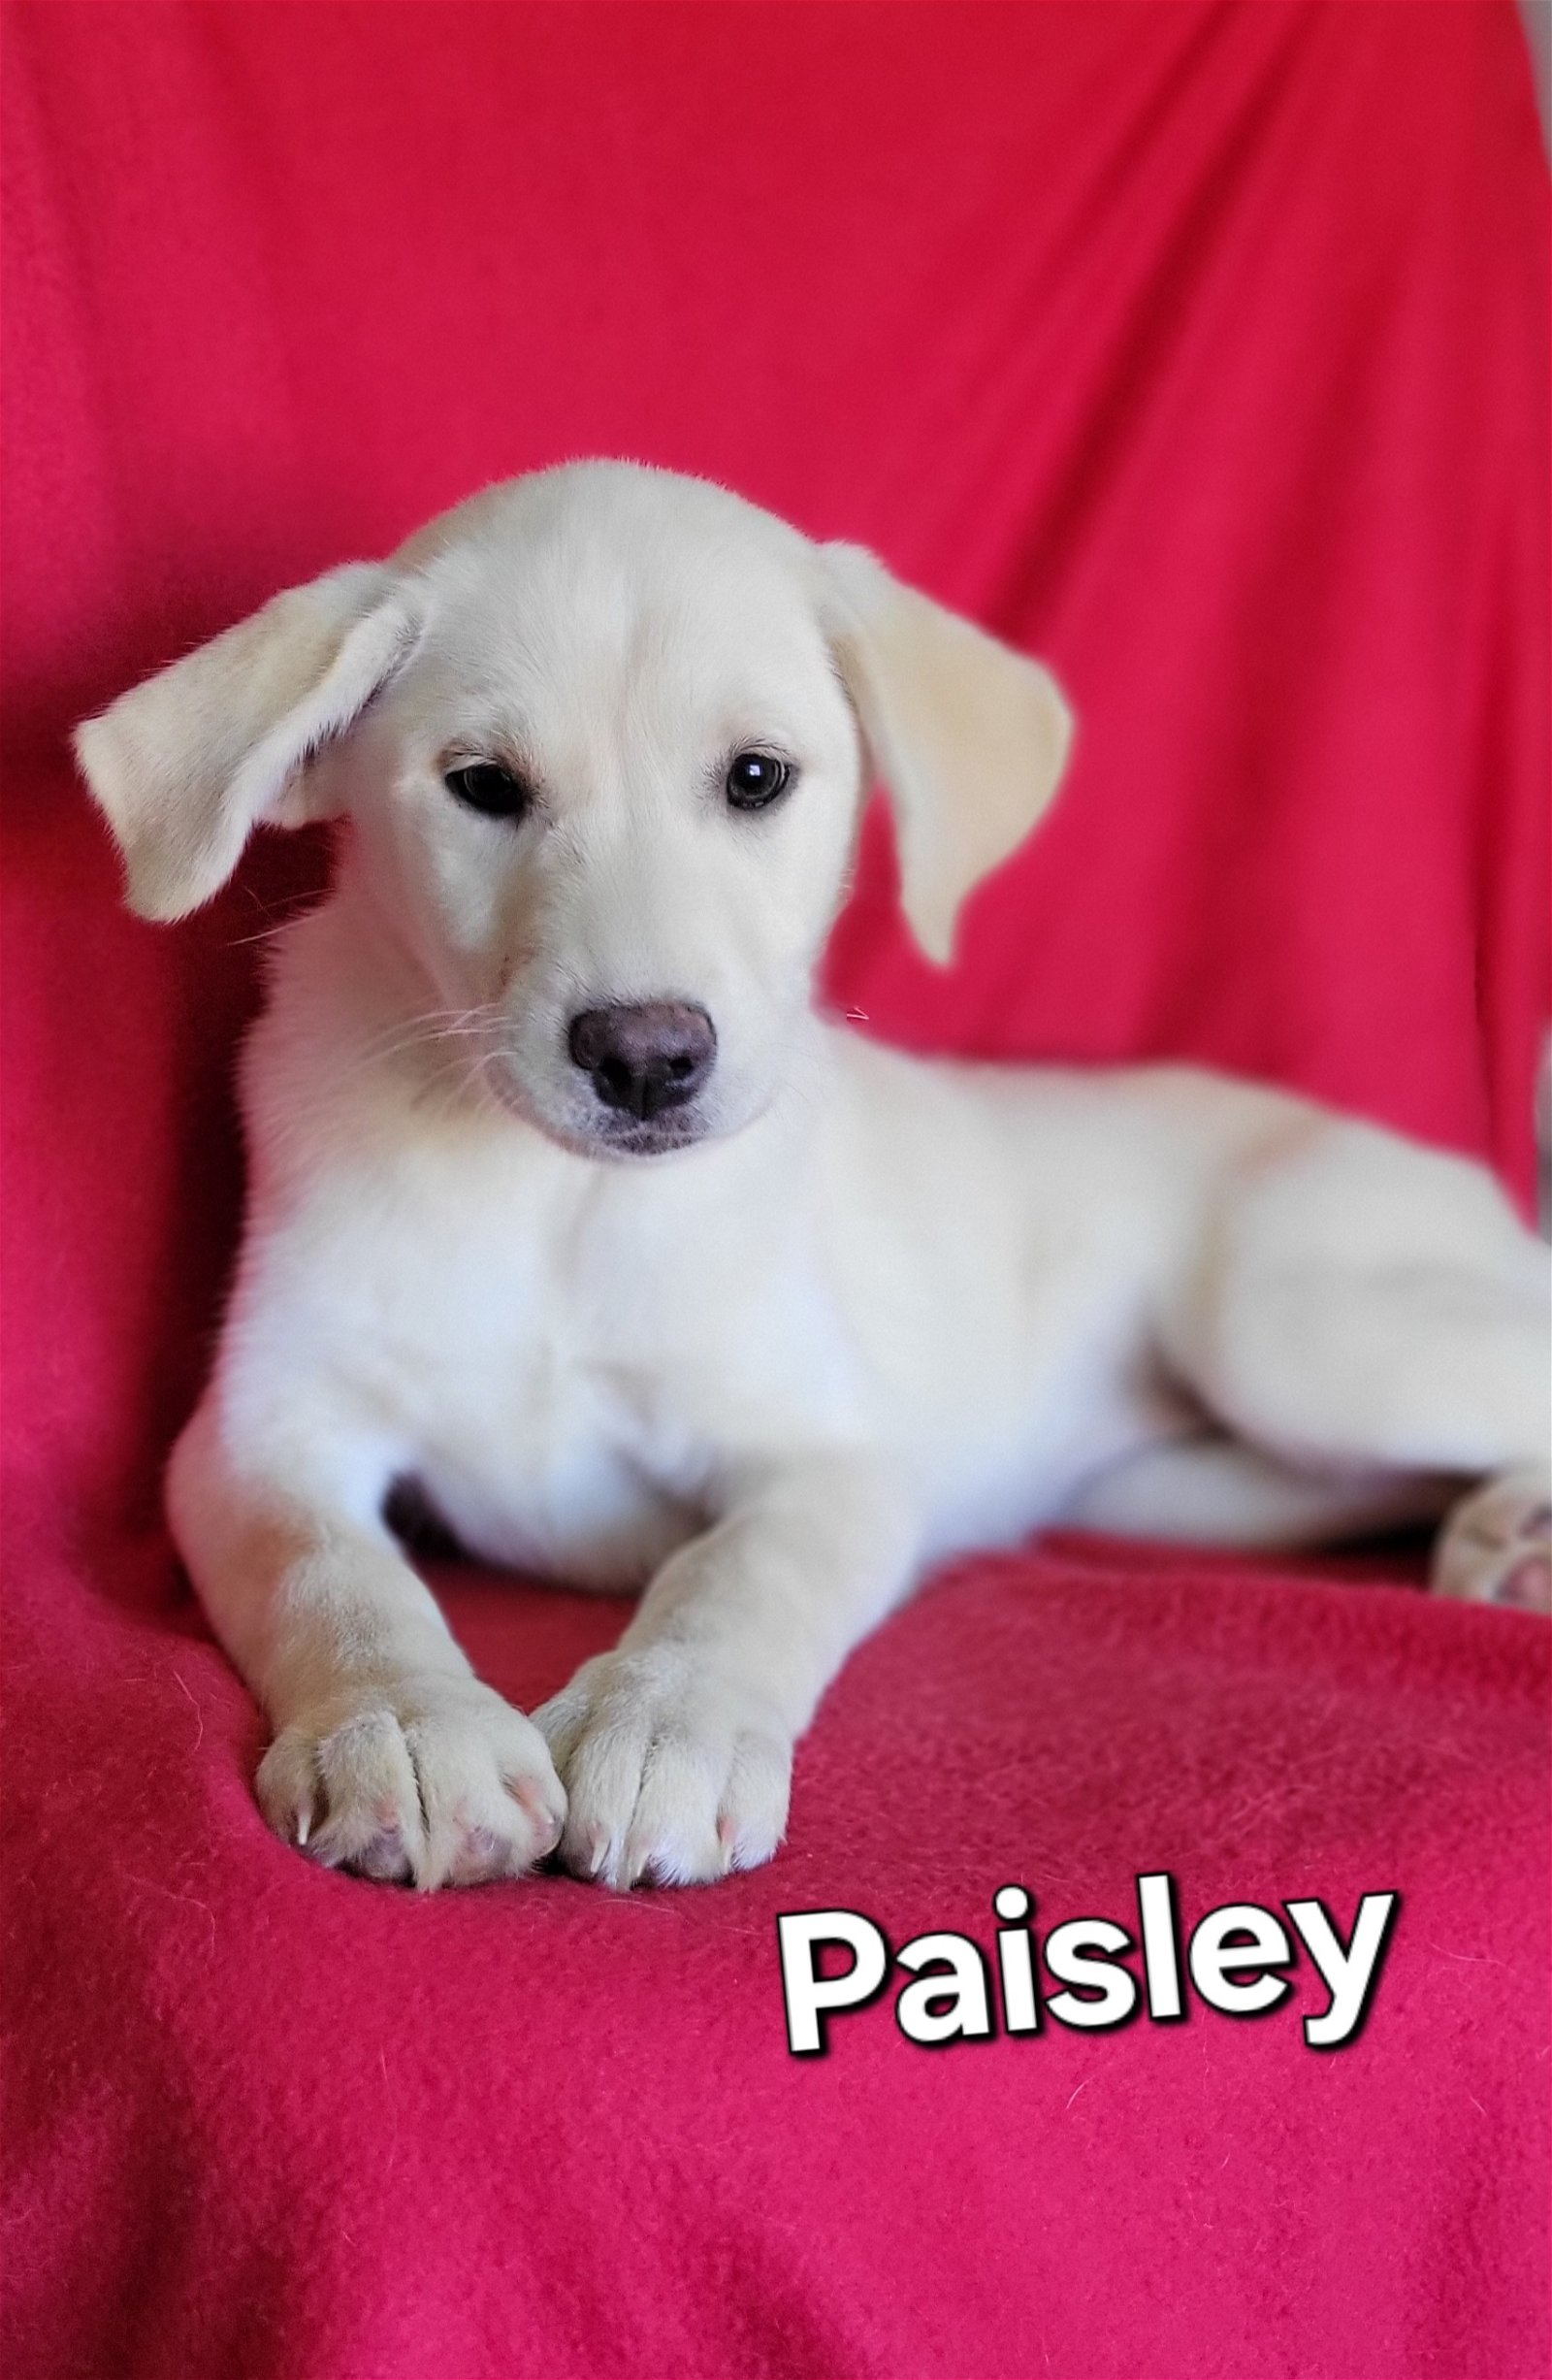 adoptable Dog in Newark, DE named Paisley